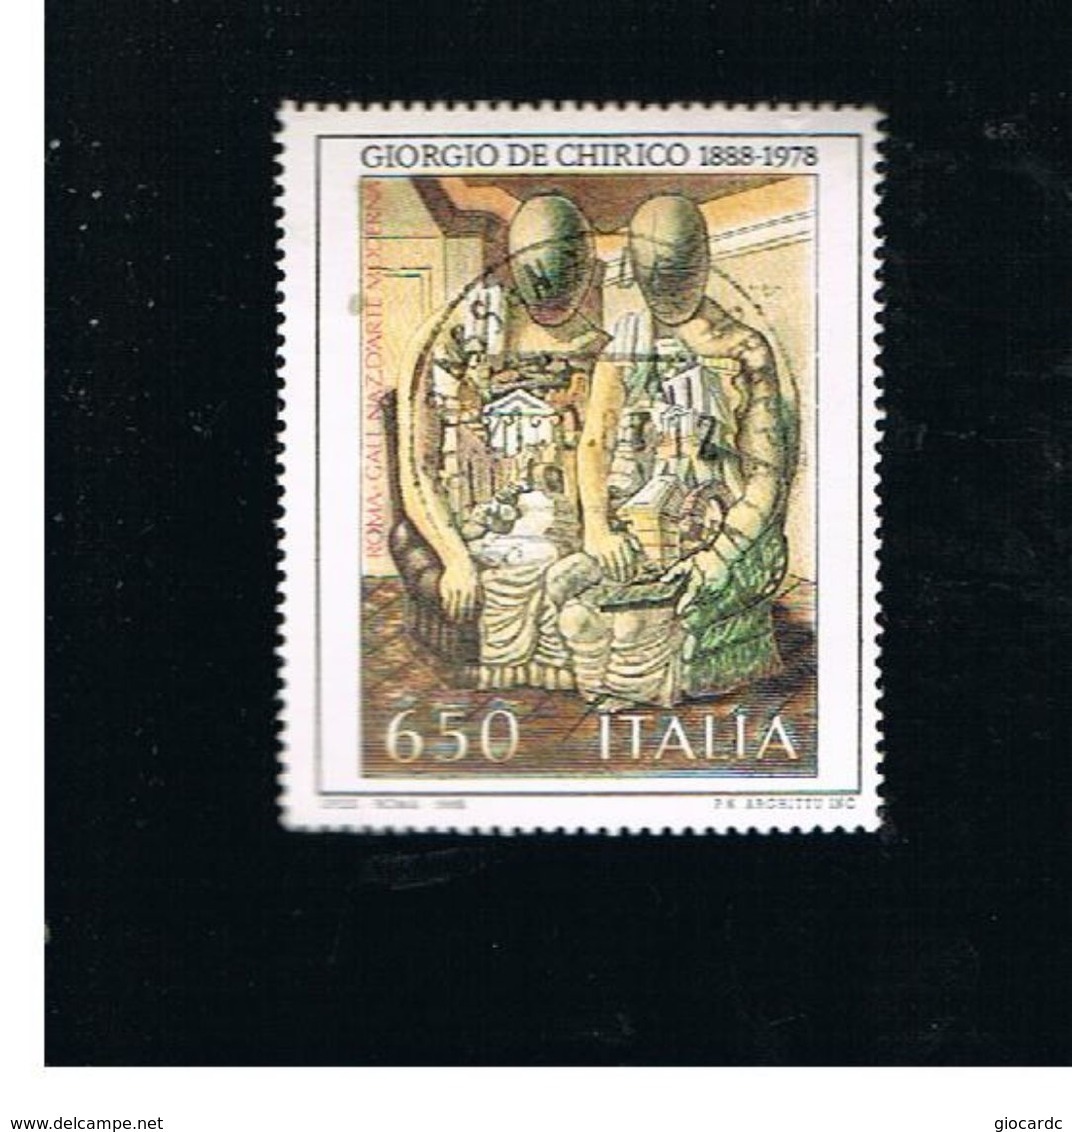 ITALIA REPUBBLICA  - SASS. 1825    -      1988     G. DE CHIRICO      -      USATO   -   RIF. 30775 - 1981-90: Usados